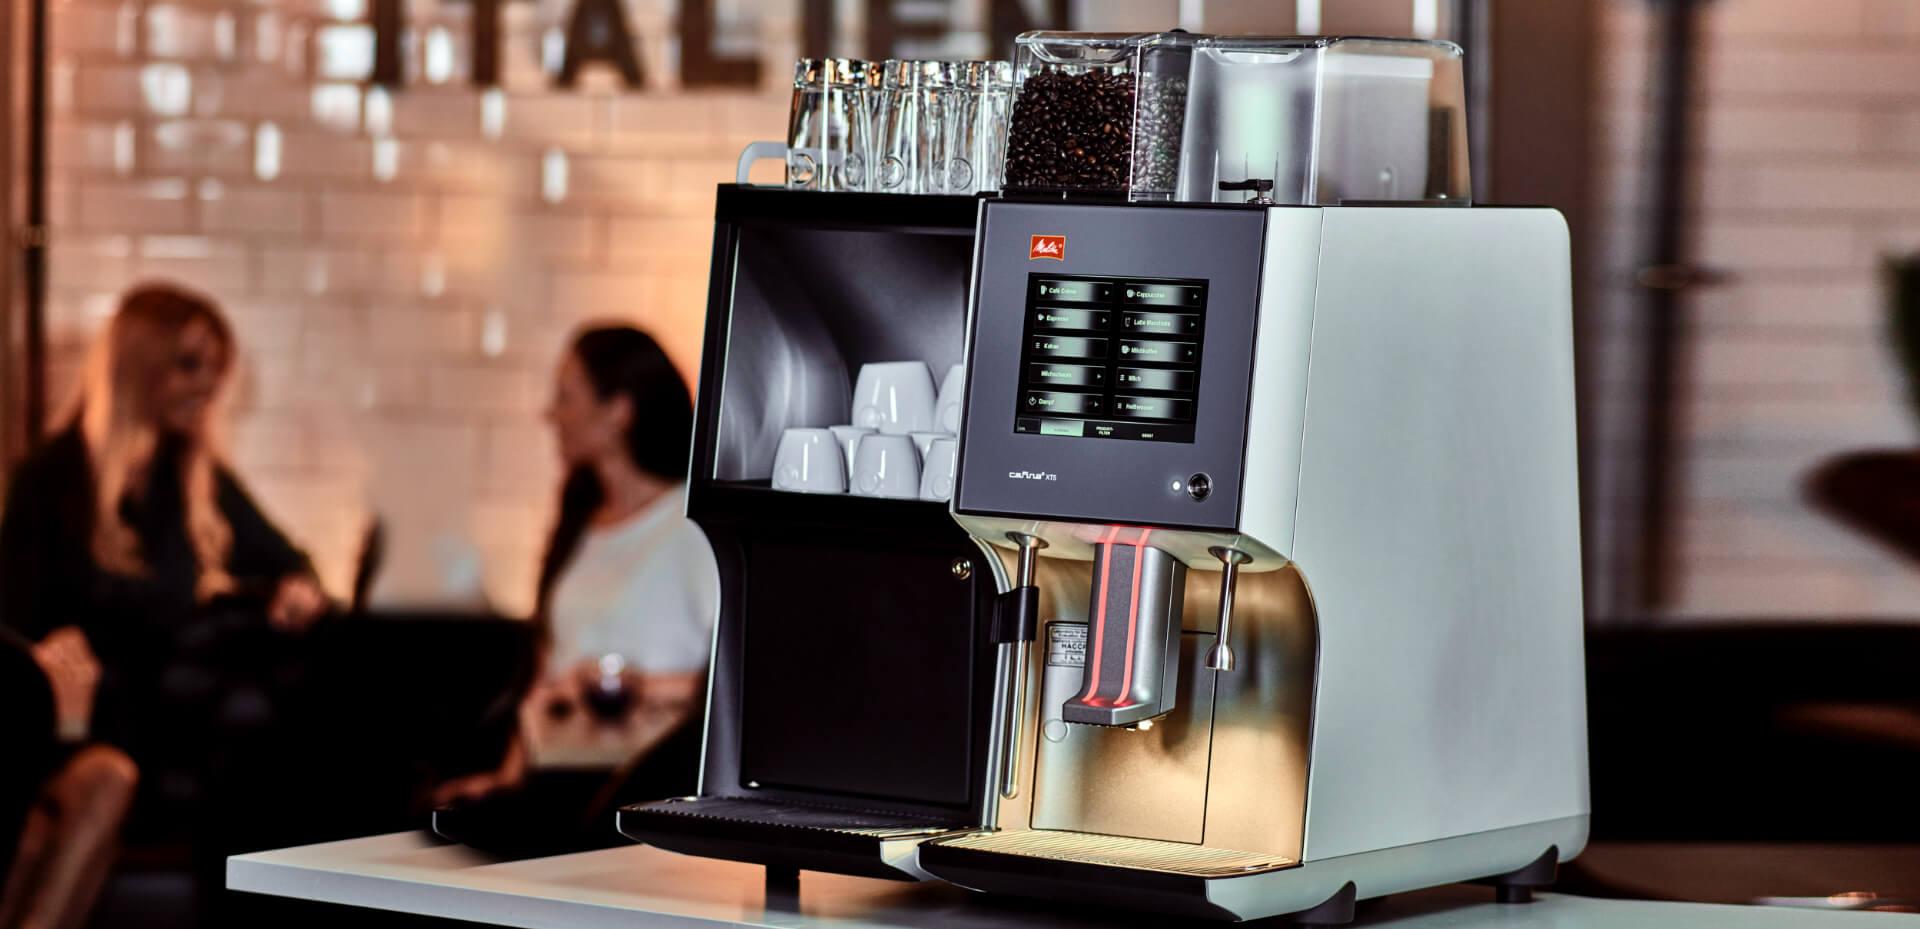 Melitta Cafina XT4 Bean To Cup Coffee Machine